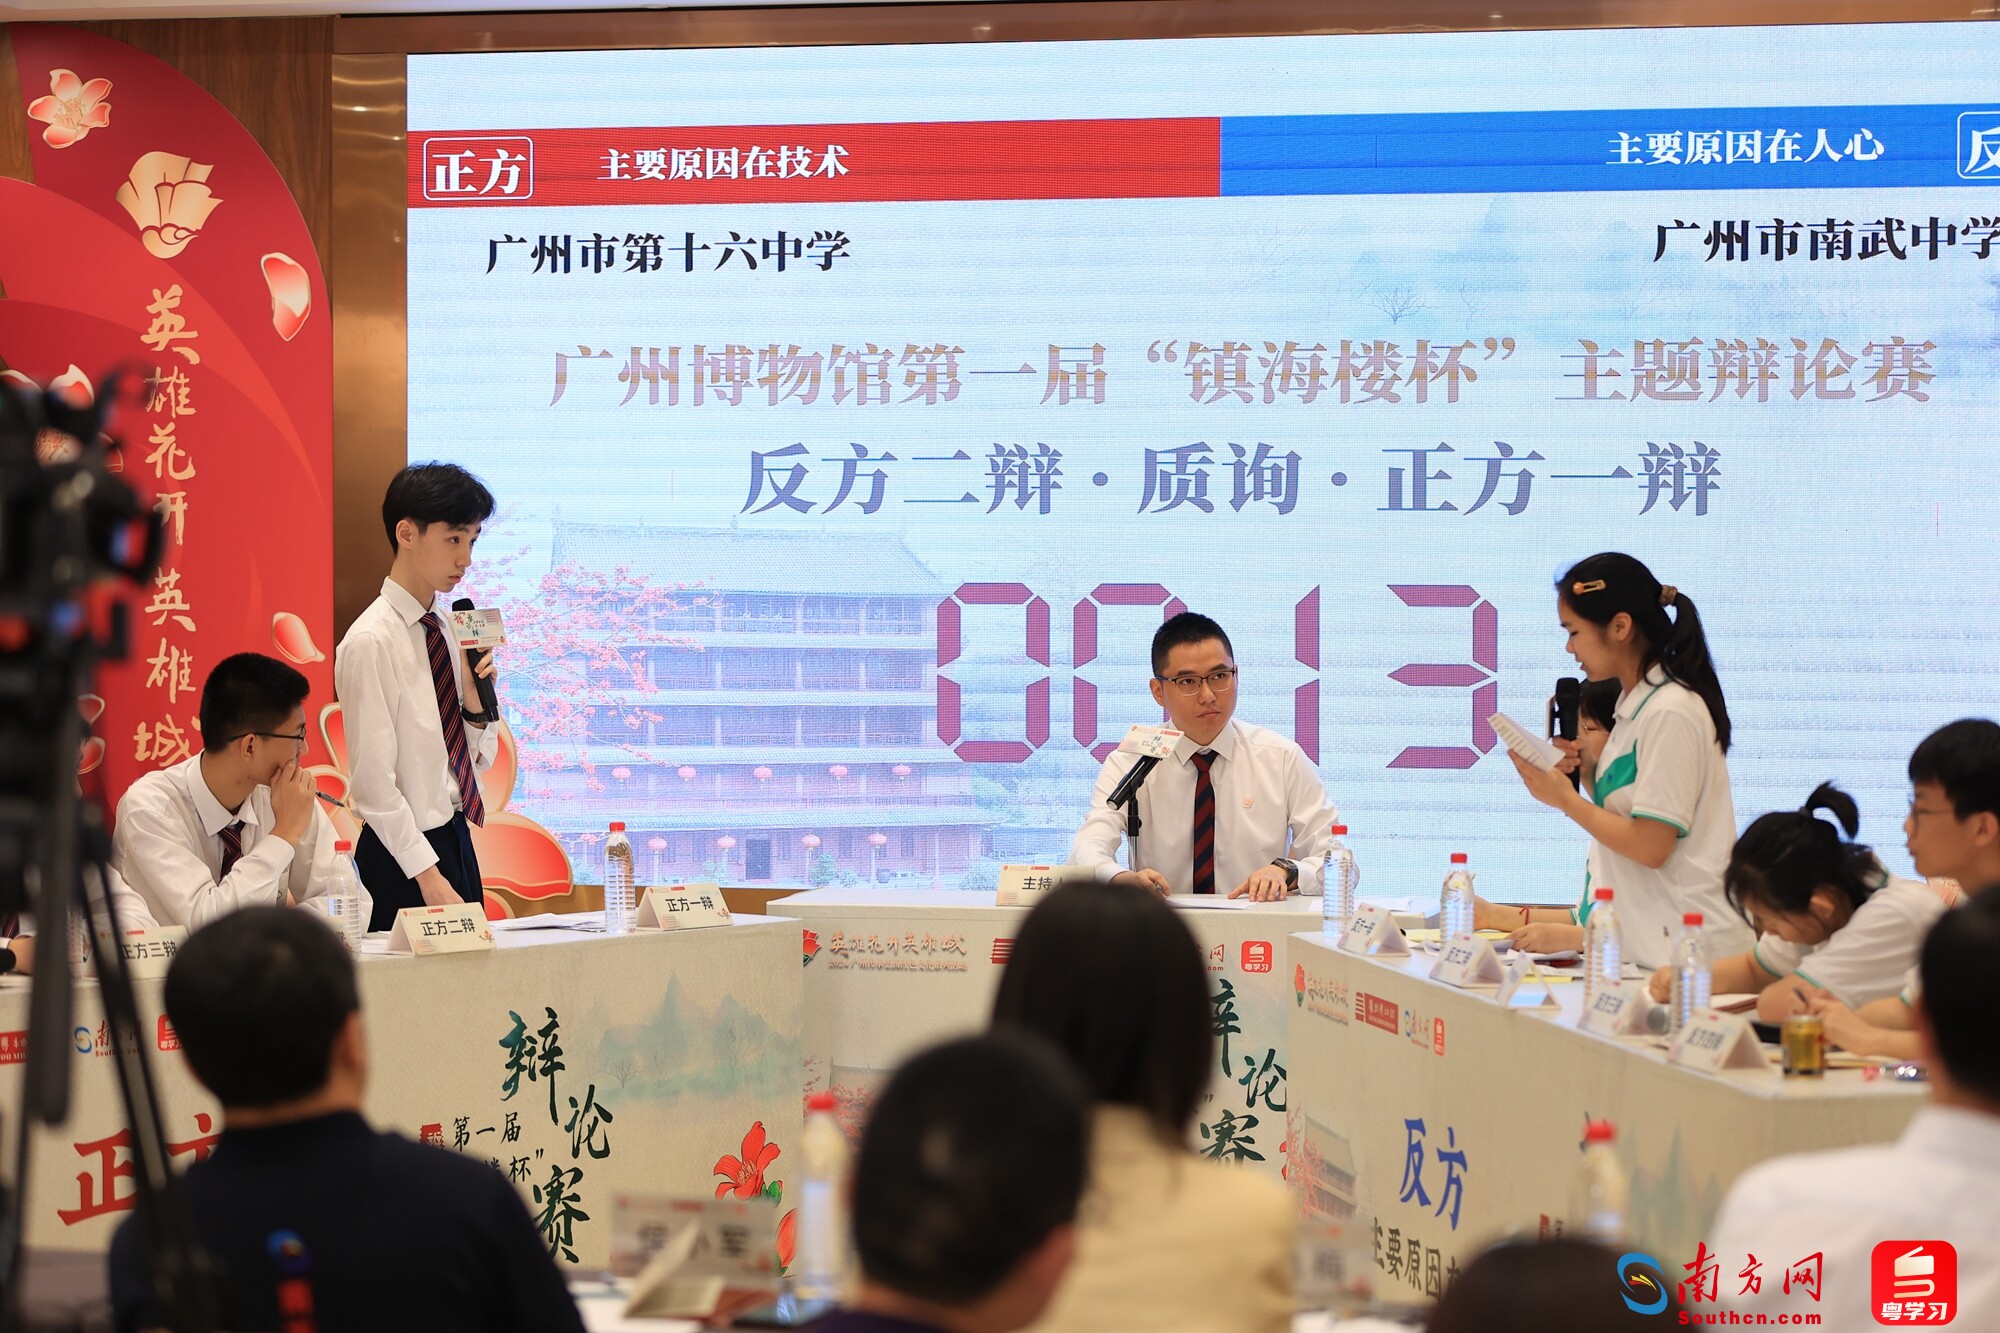 广州首届“镇海楼杯”主题辩论赛复赛现场。广州博物馆供图。